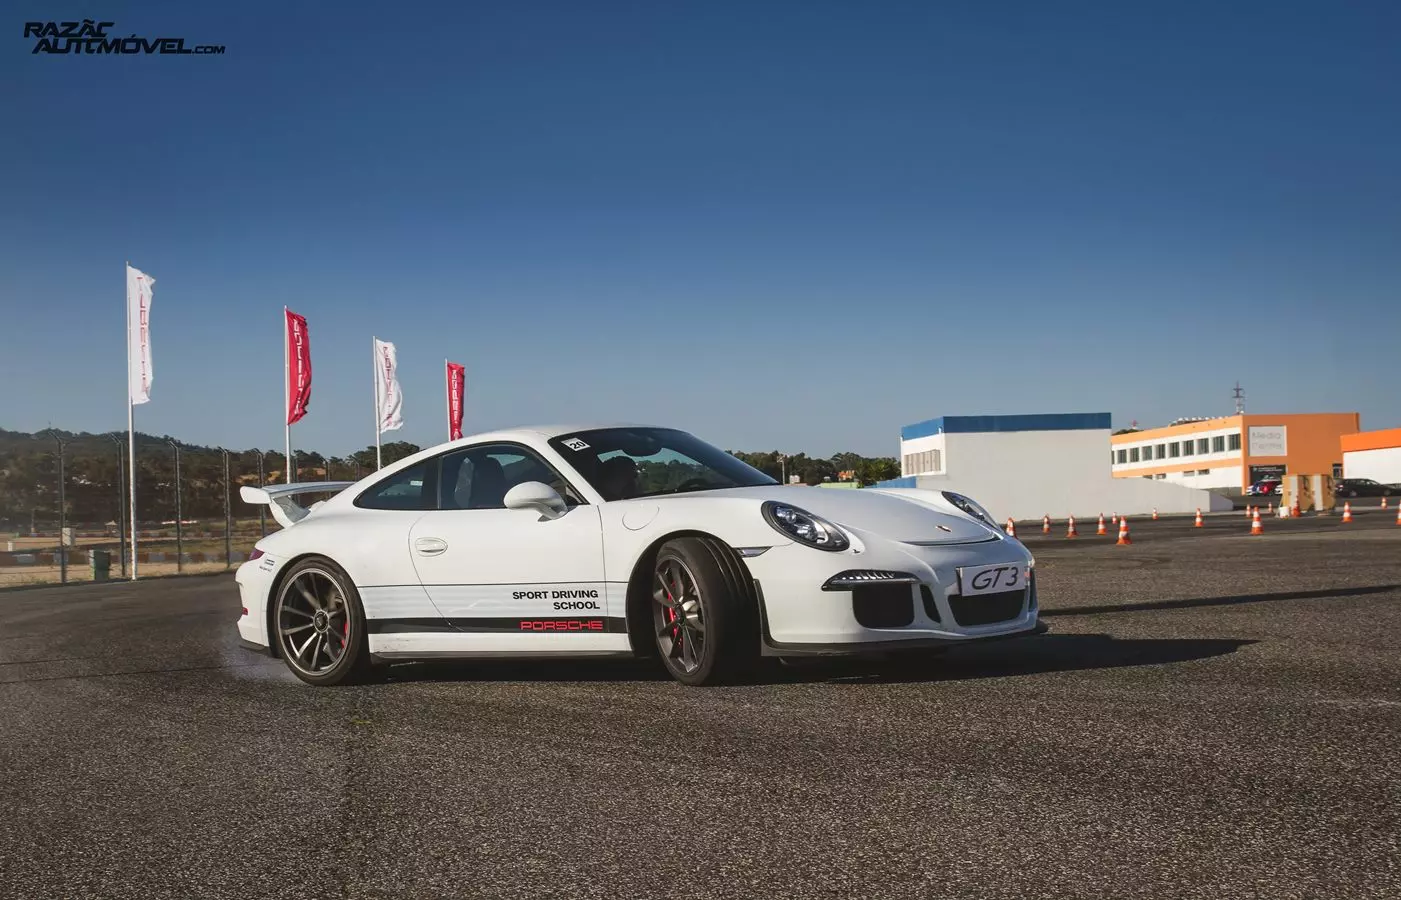 I-Porsche 911 gt3 estril 2